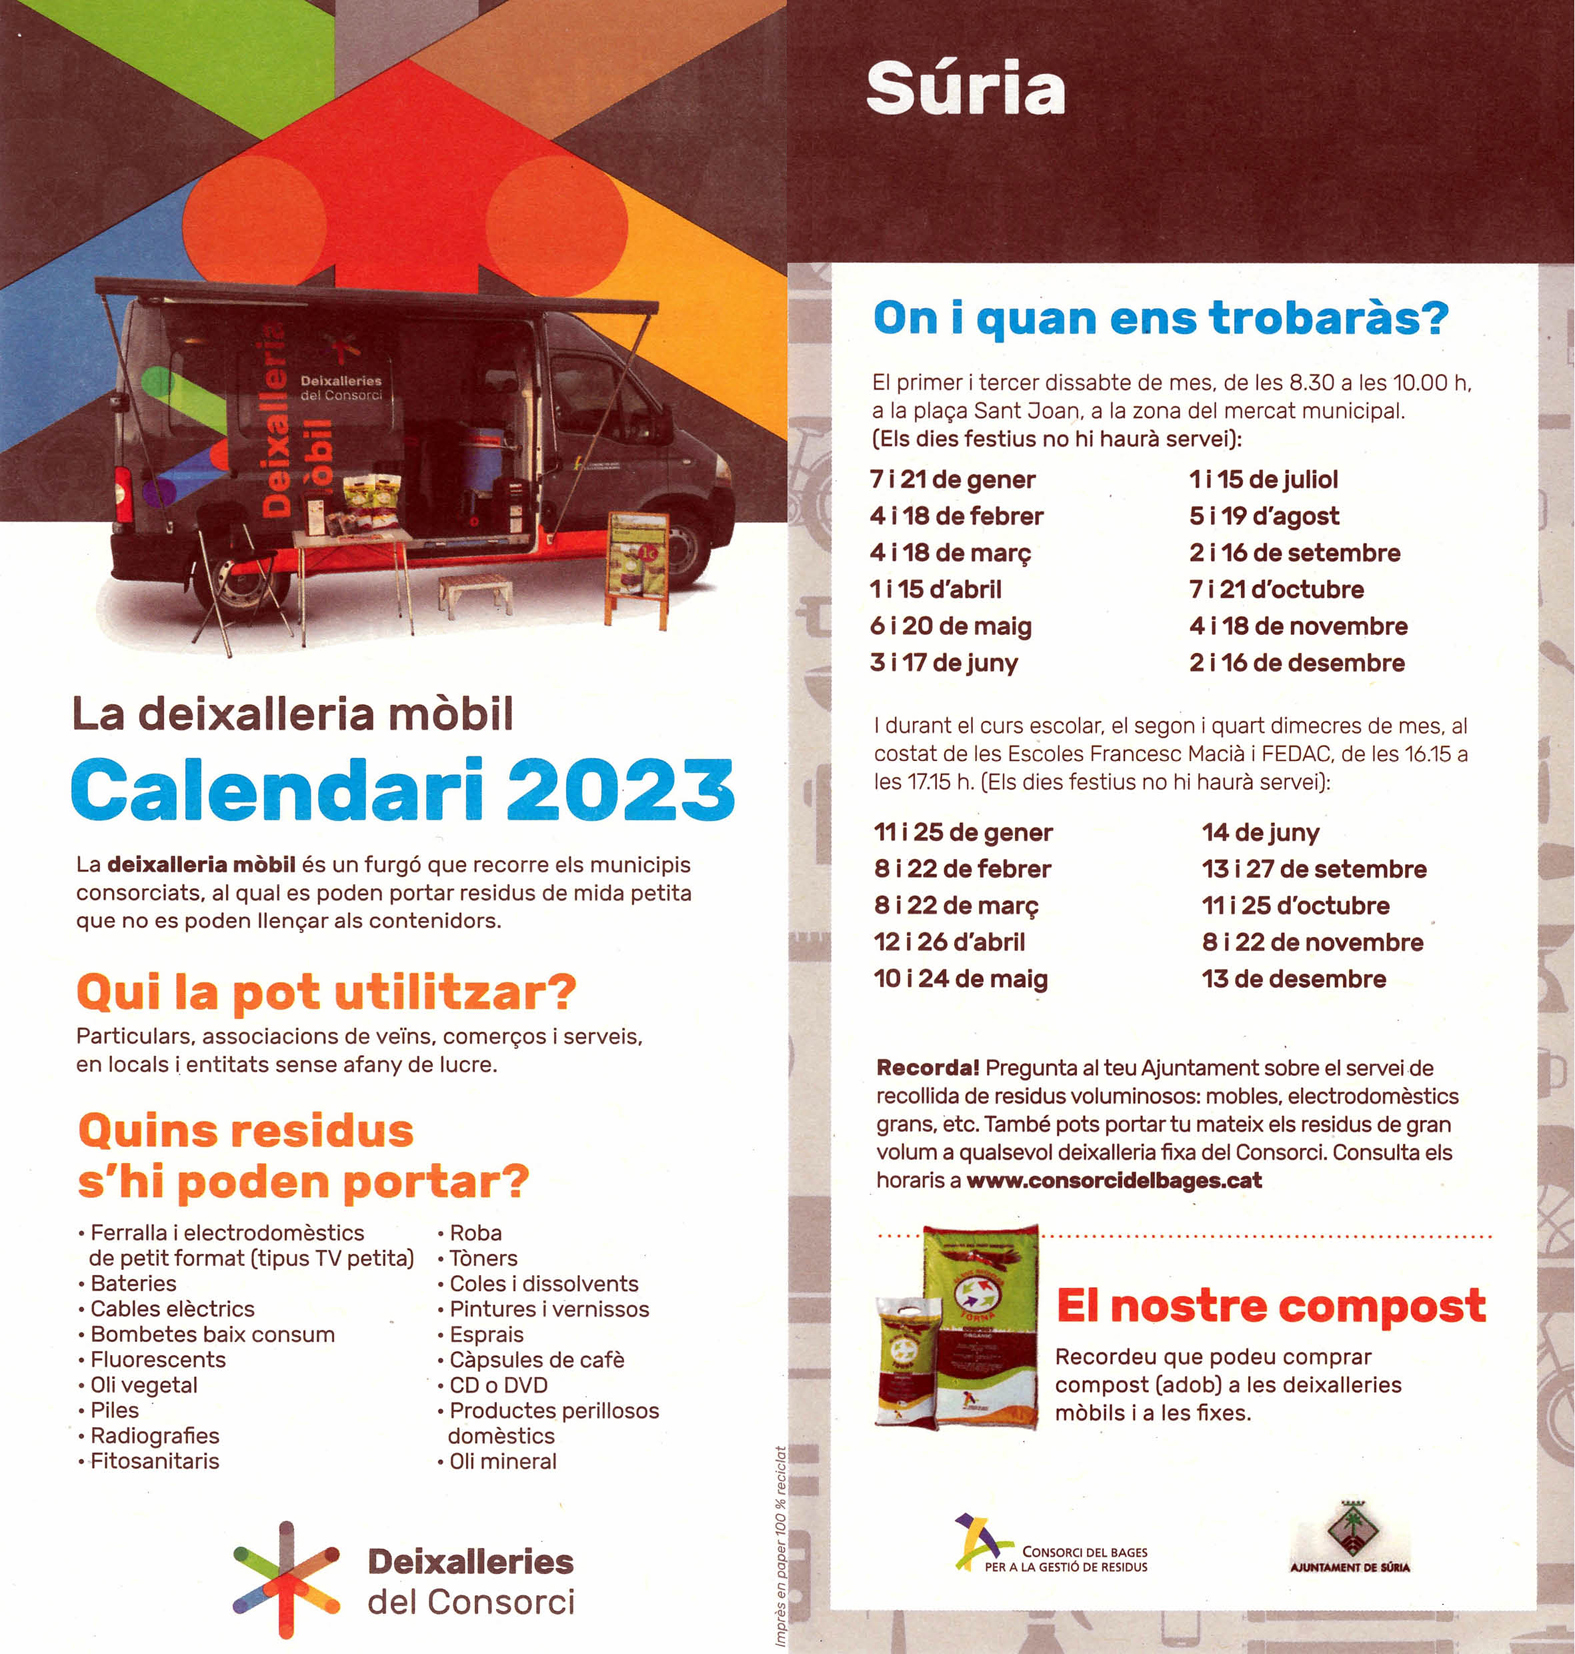 Calendari de la Deixalleria Mòbil a Súria - Any 2023.